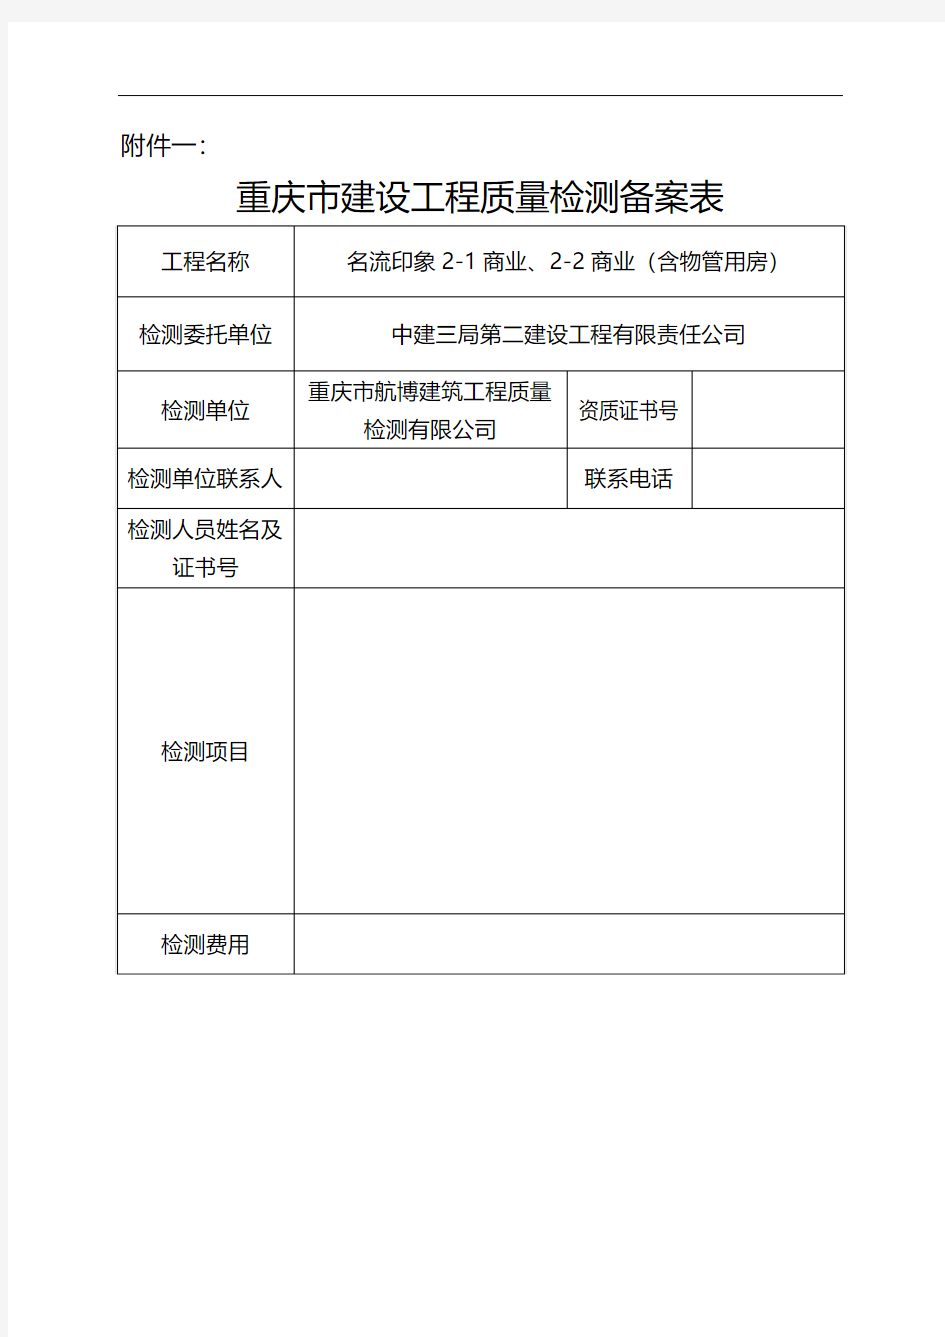 《重庆市建设工程质量检测备案表》